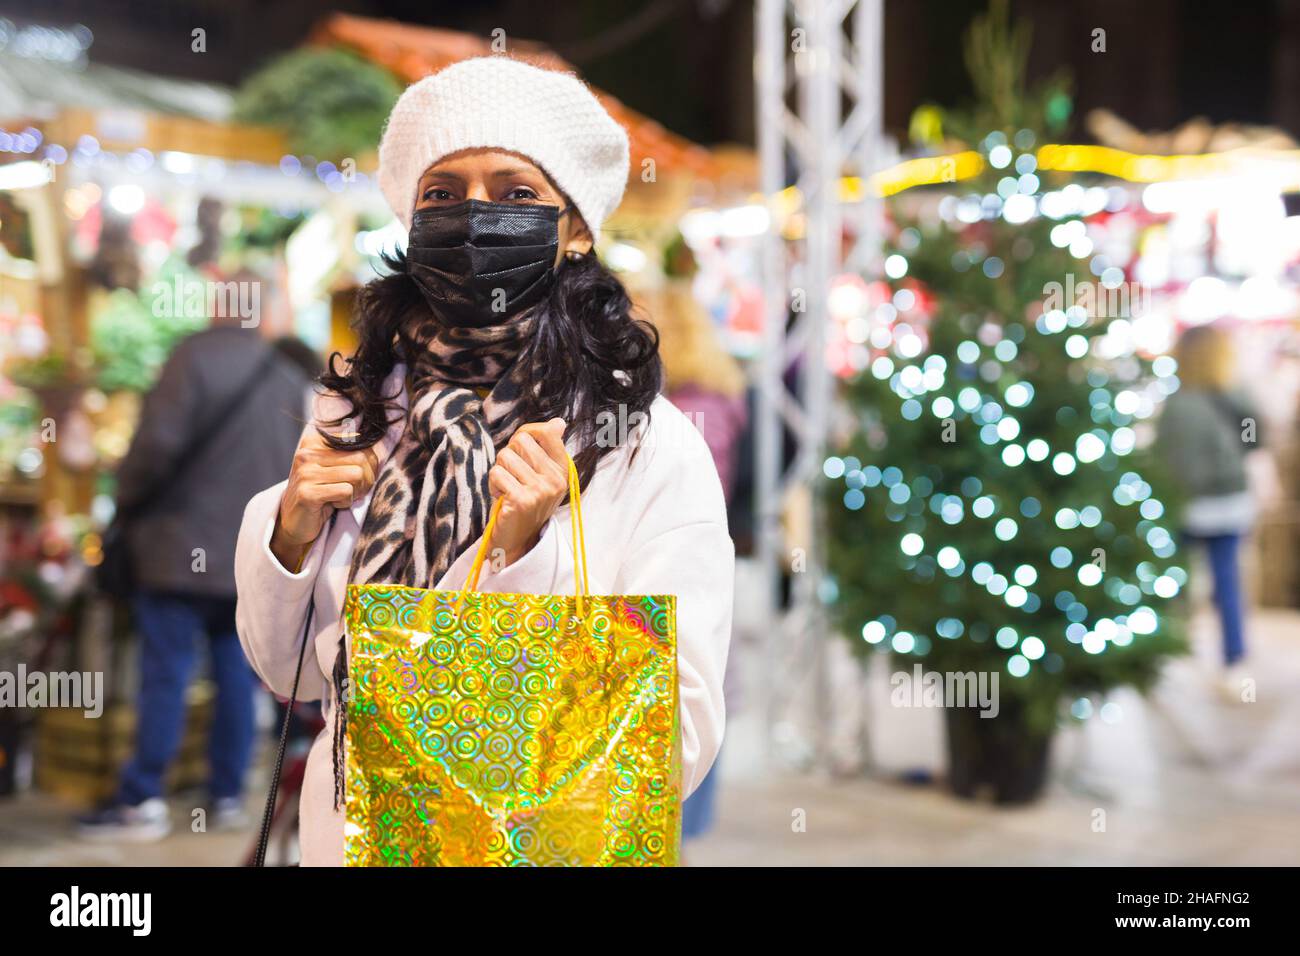 Donna in maschera protettiva con sacchetti di carta shopping alla fiera di Natale Foto Stock